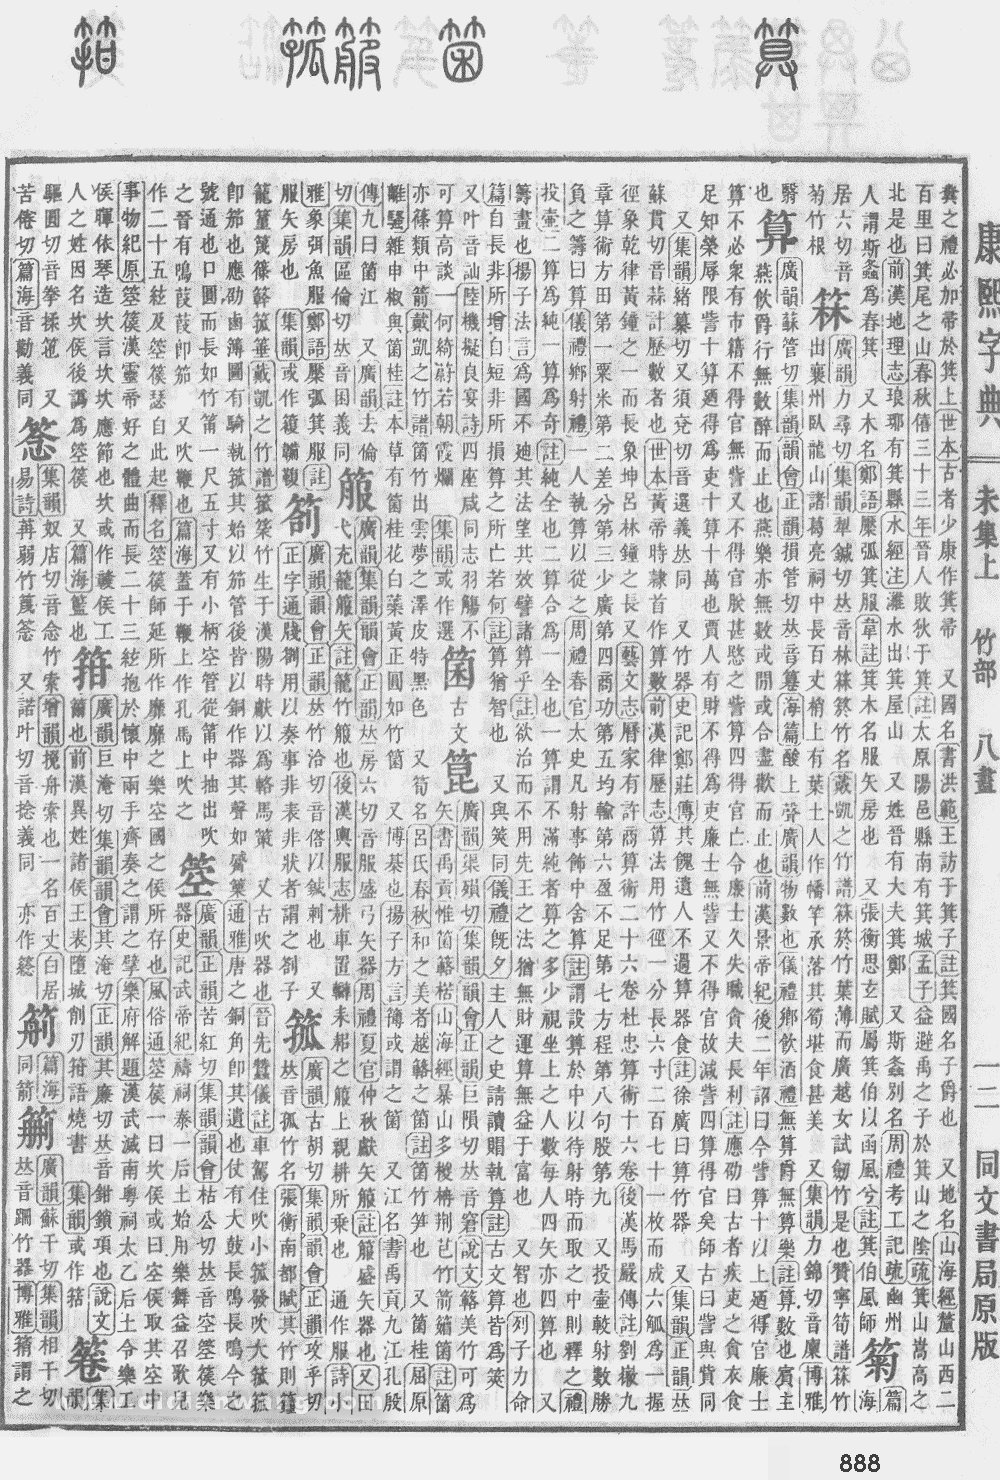 康熙字典掃描版第888頁